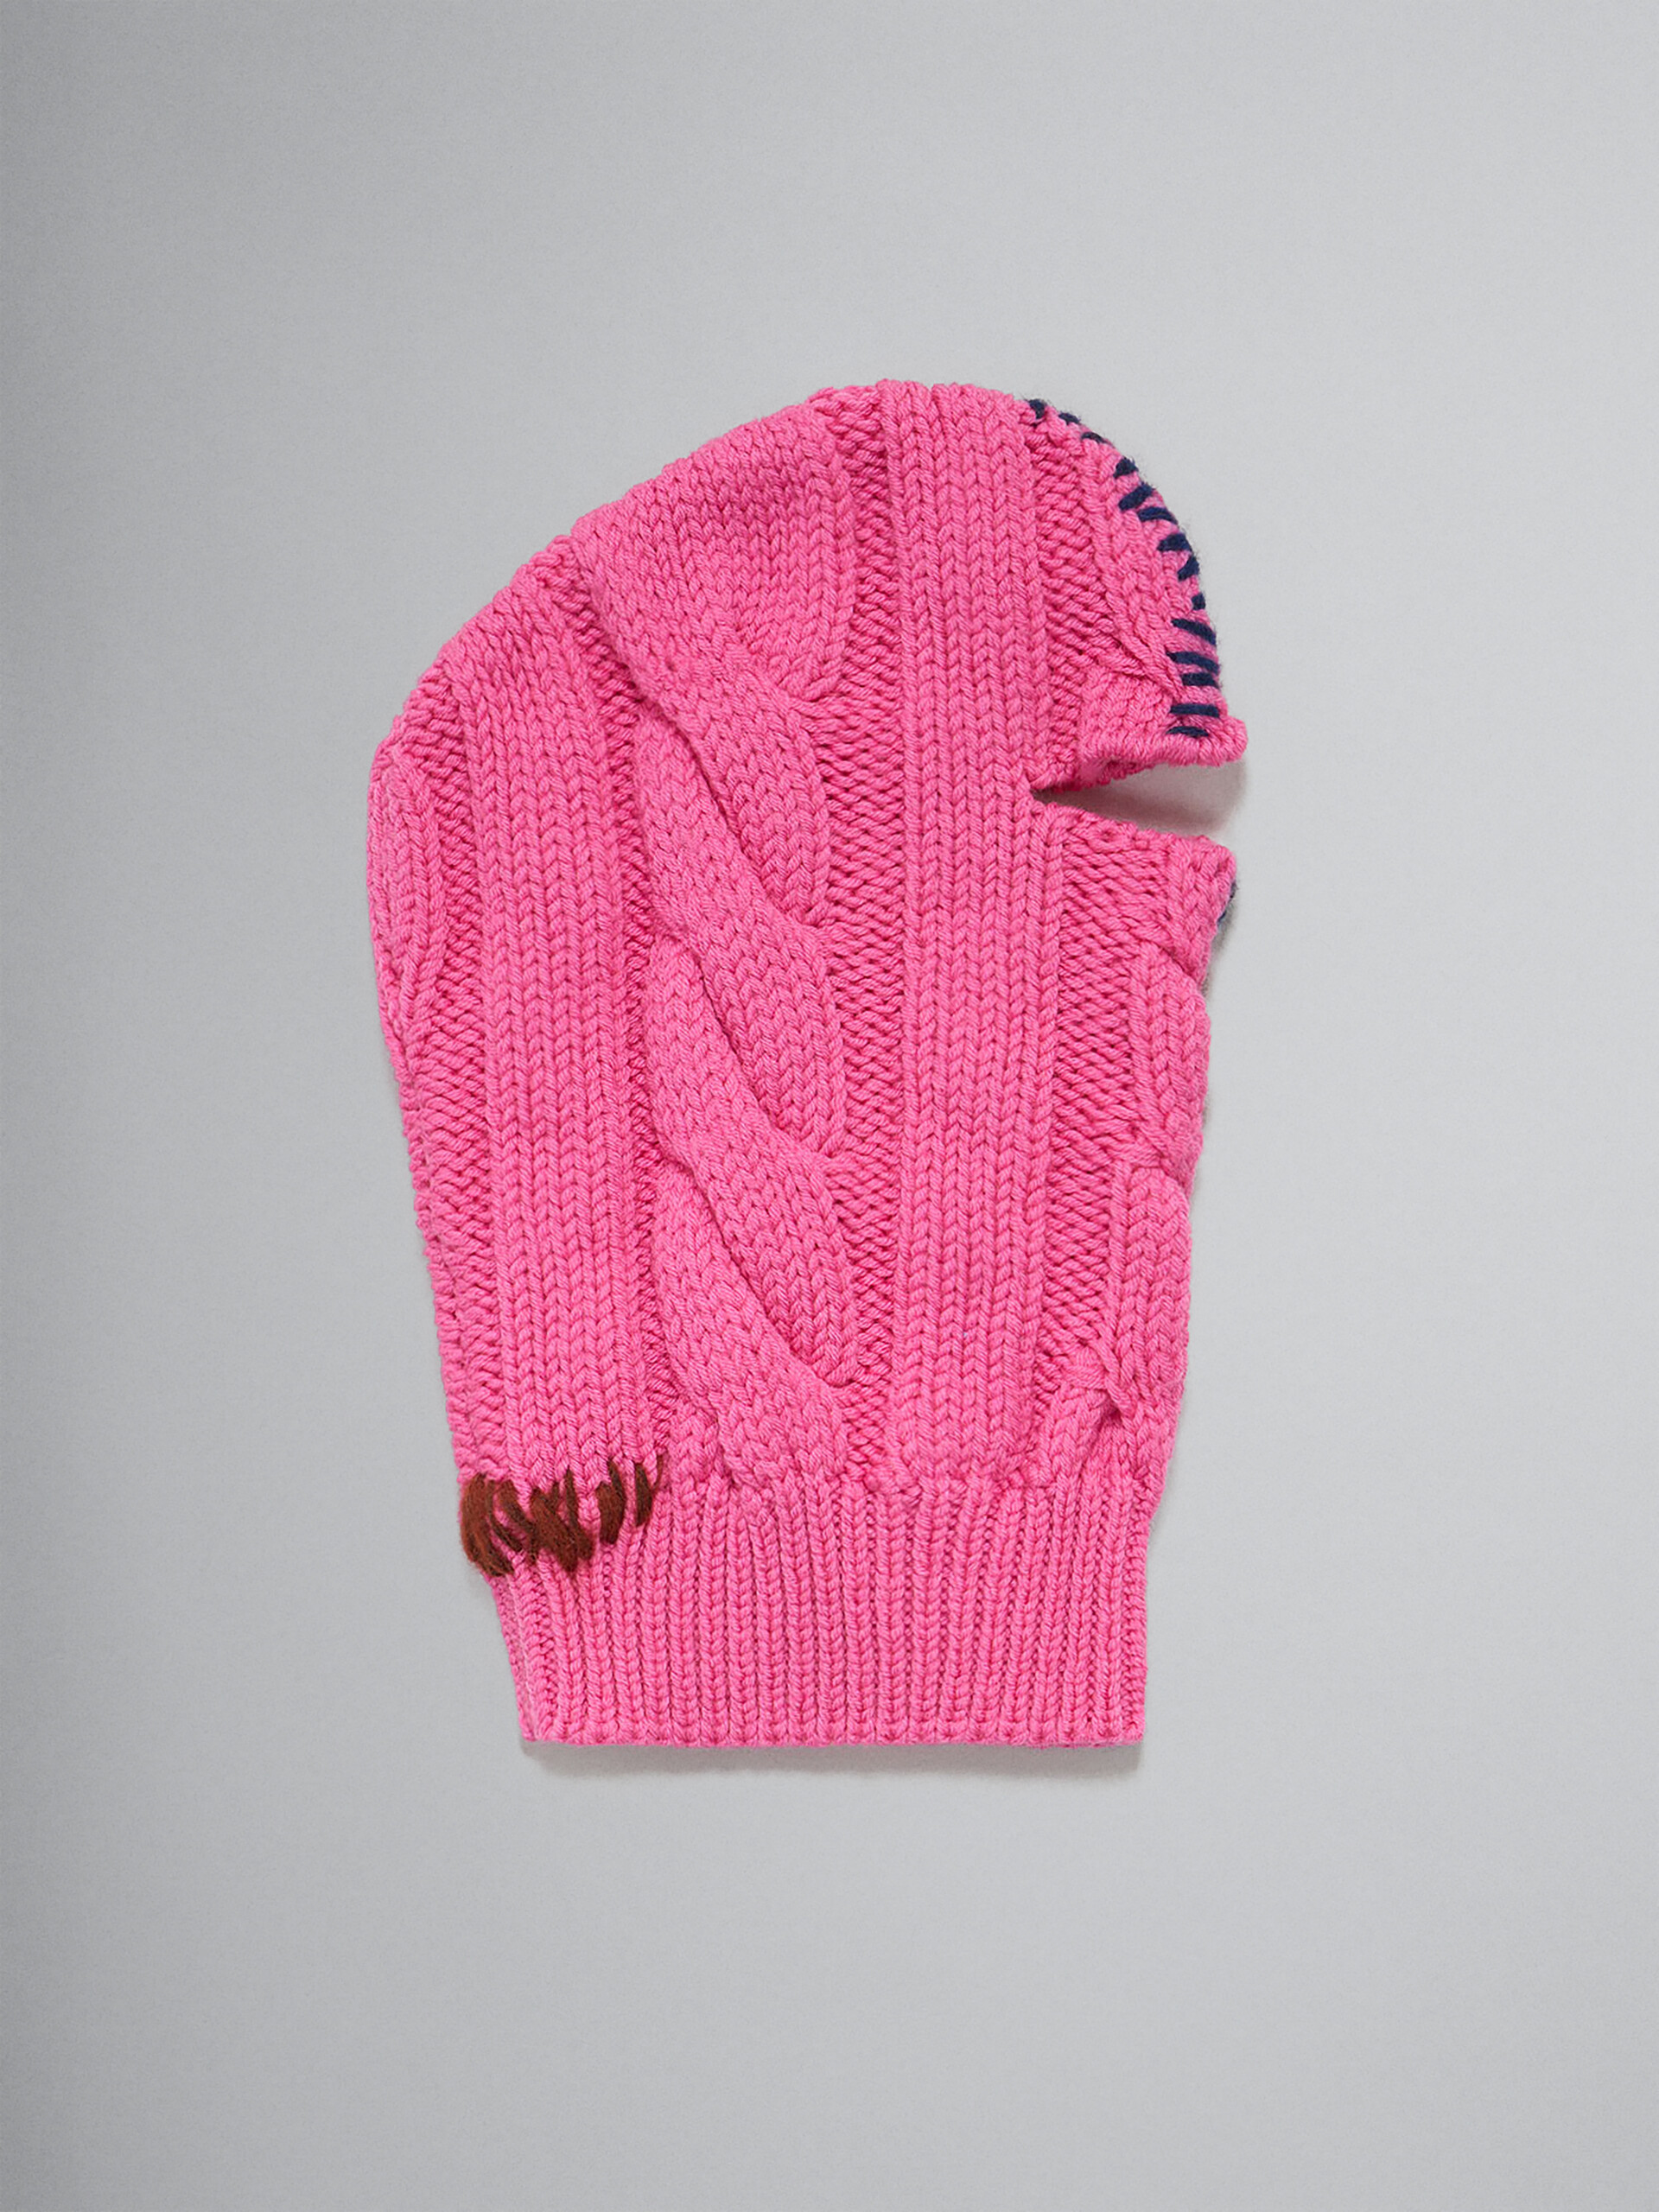 Cagoule en laine fuchsia avec rapiéçage contrastant - Autres accessoires - Image 1